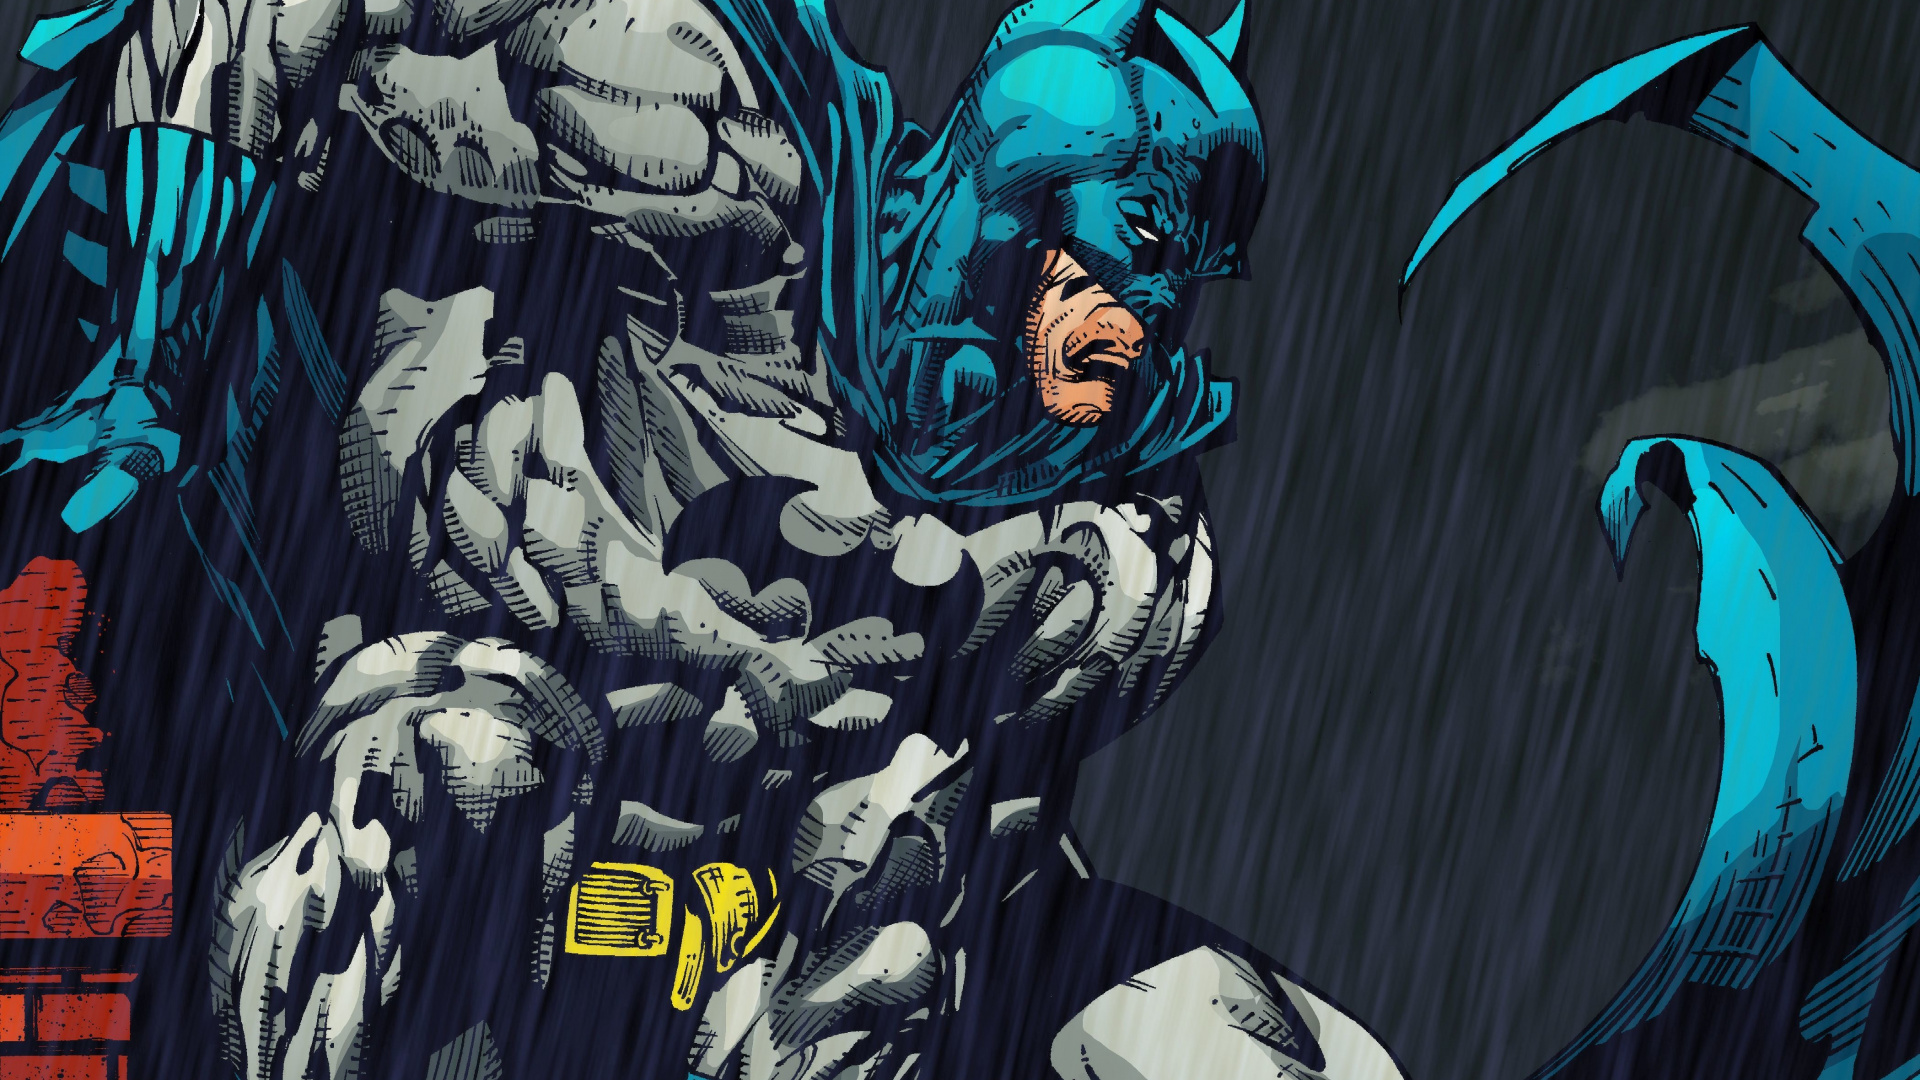 Batman, Comics, Superhero, Wallpaper - Batman Comic Wallpaper Hd - HD Wallpaper 